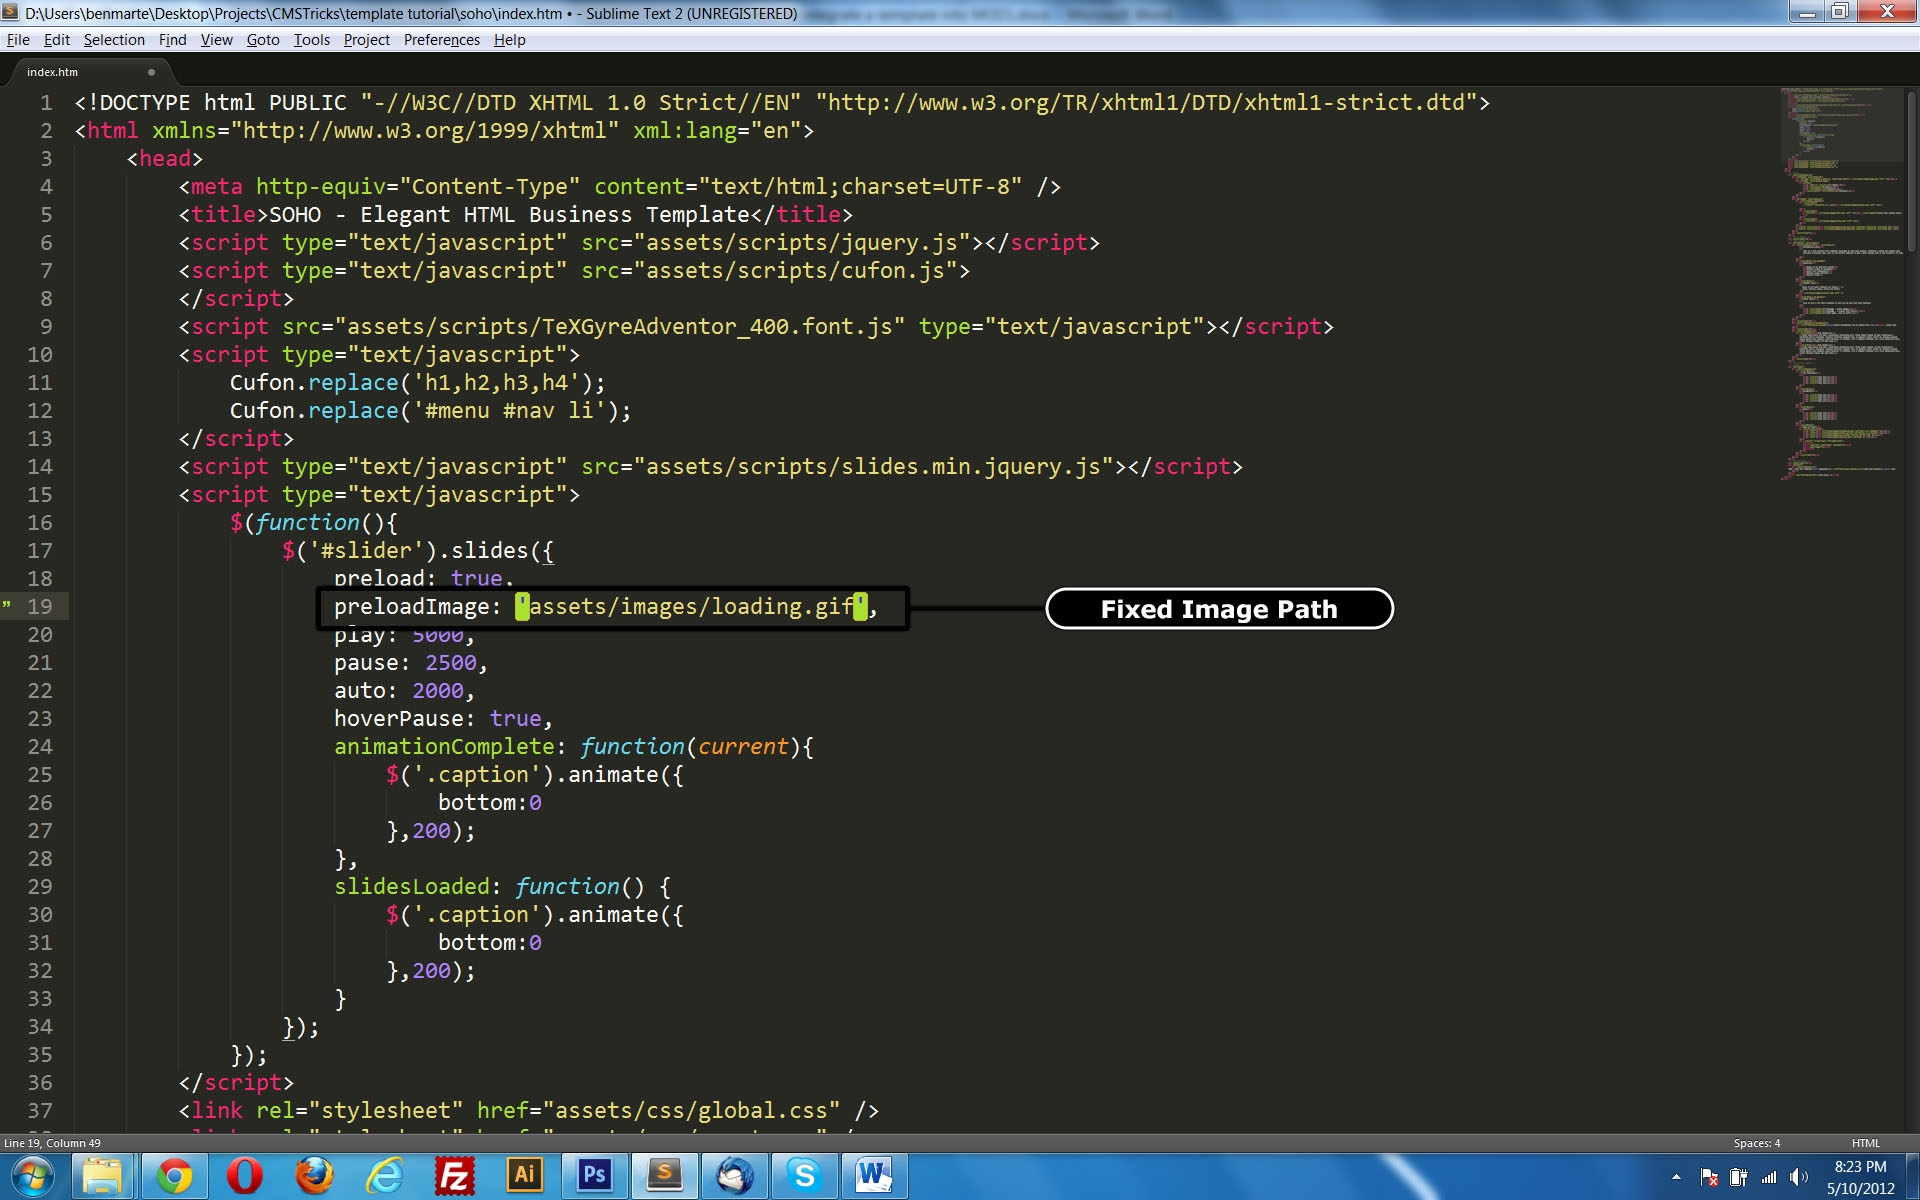 Обои на рабочий стол скрипты. Программированные скрипты обои. Image Path in html. Script src js player js script